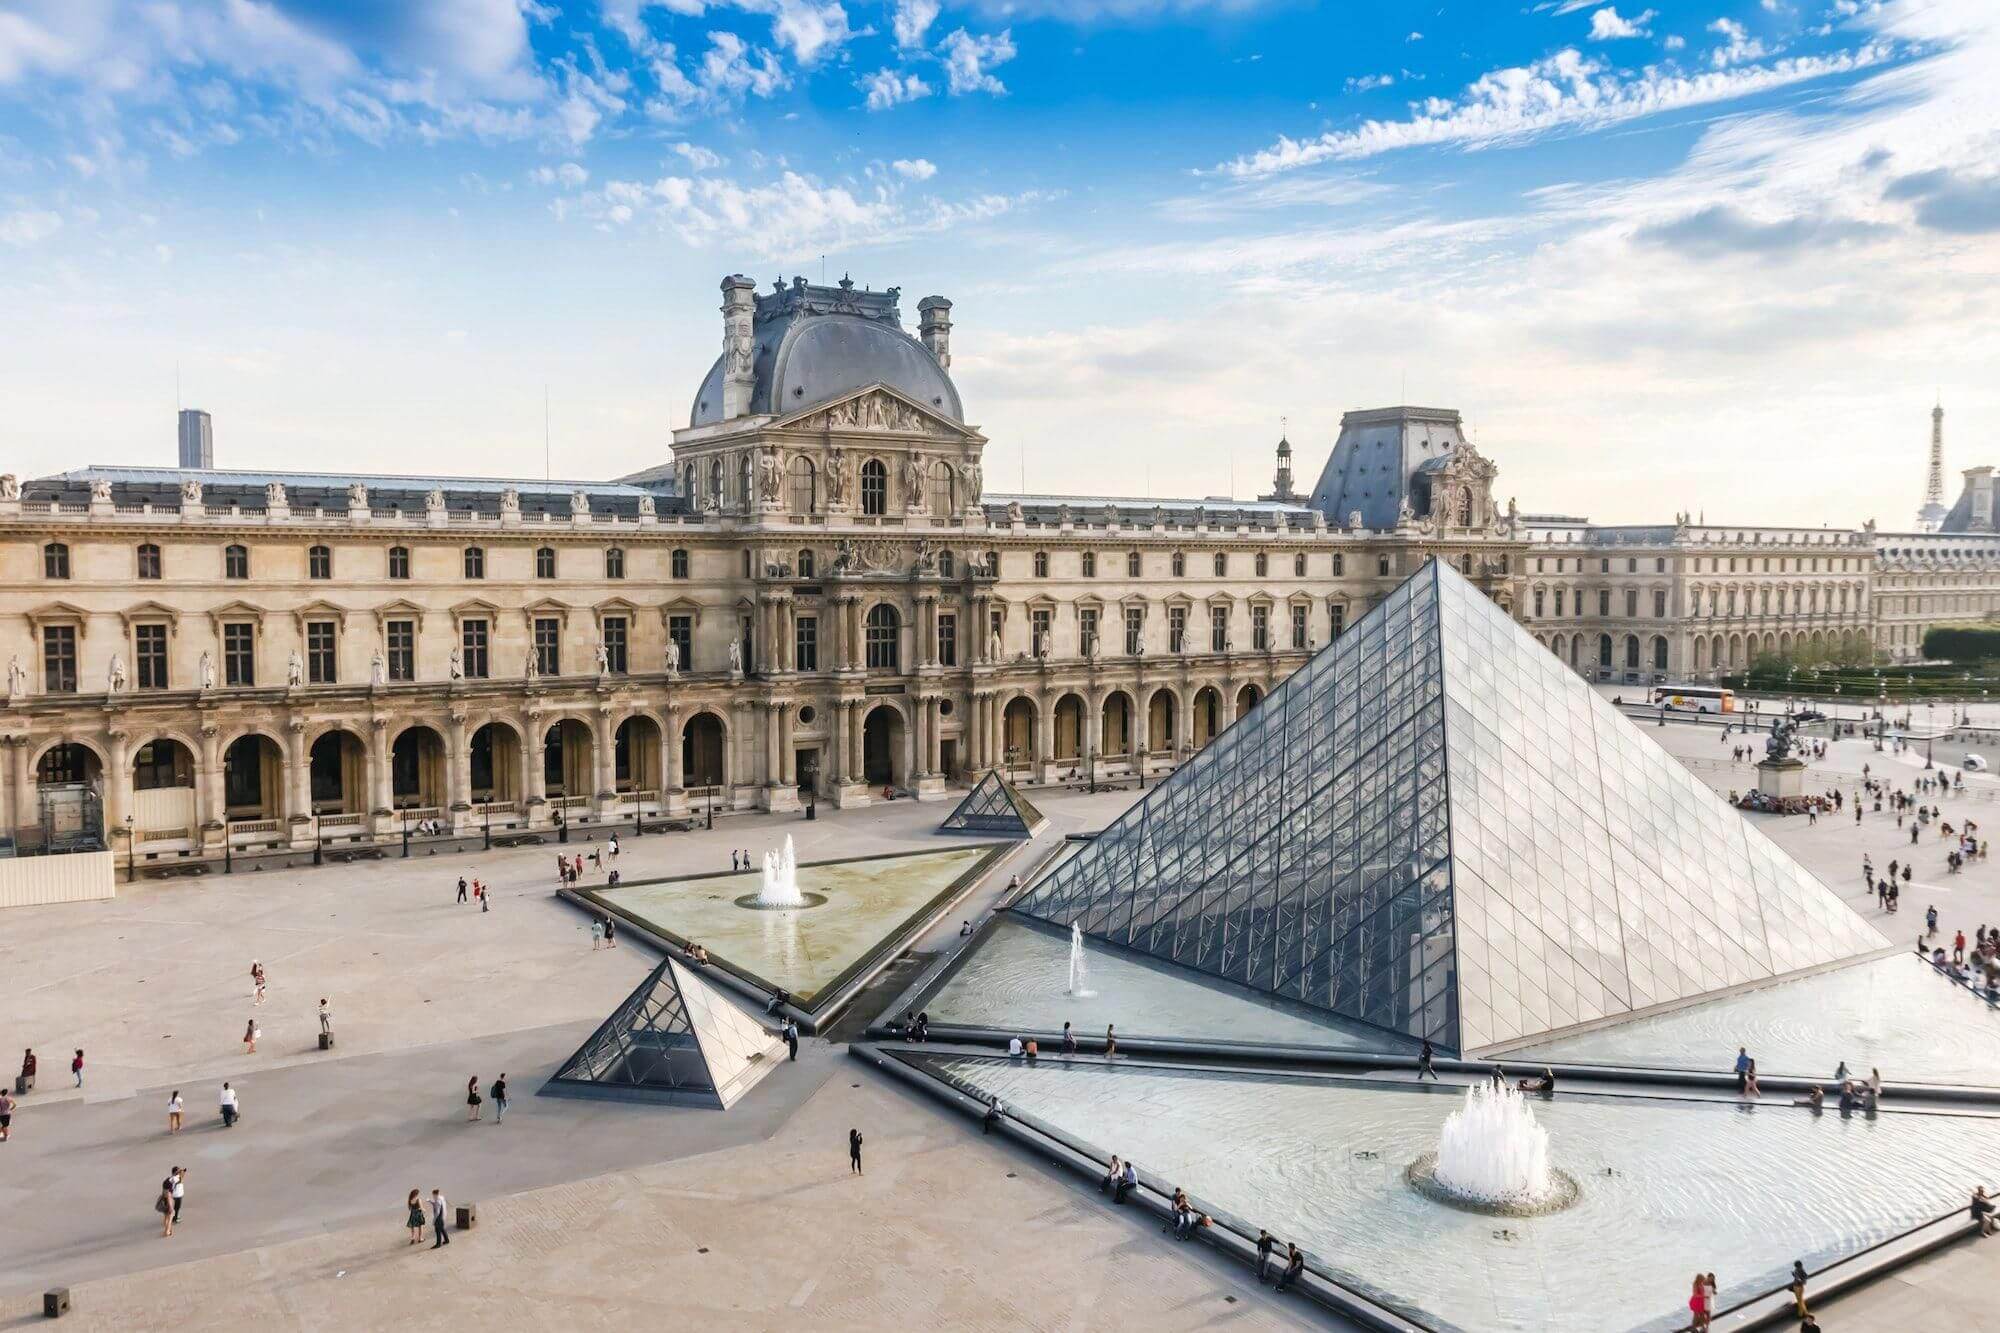 Дворец Лувр в Париже